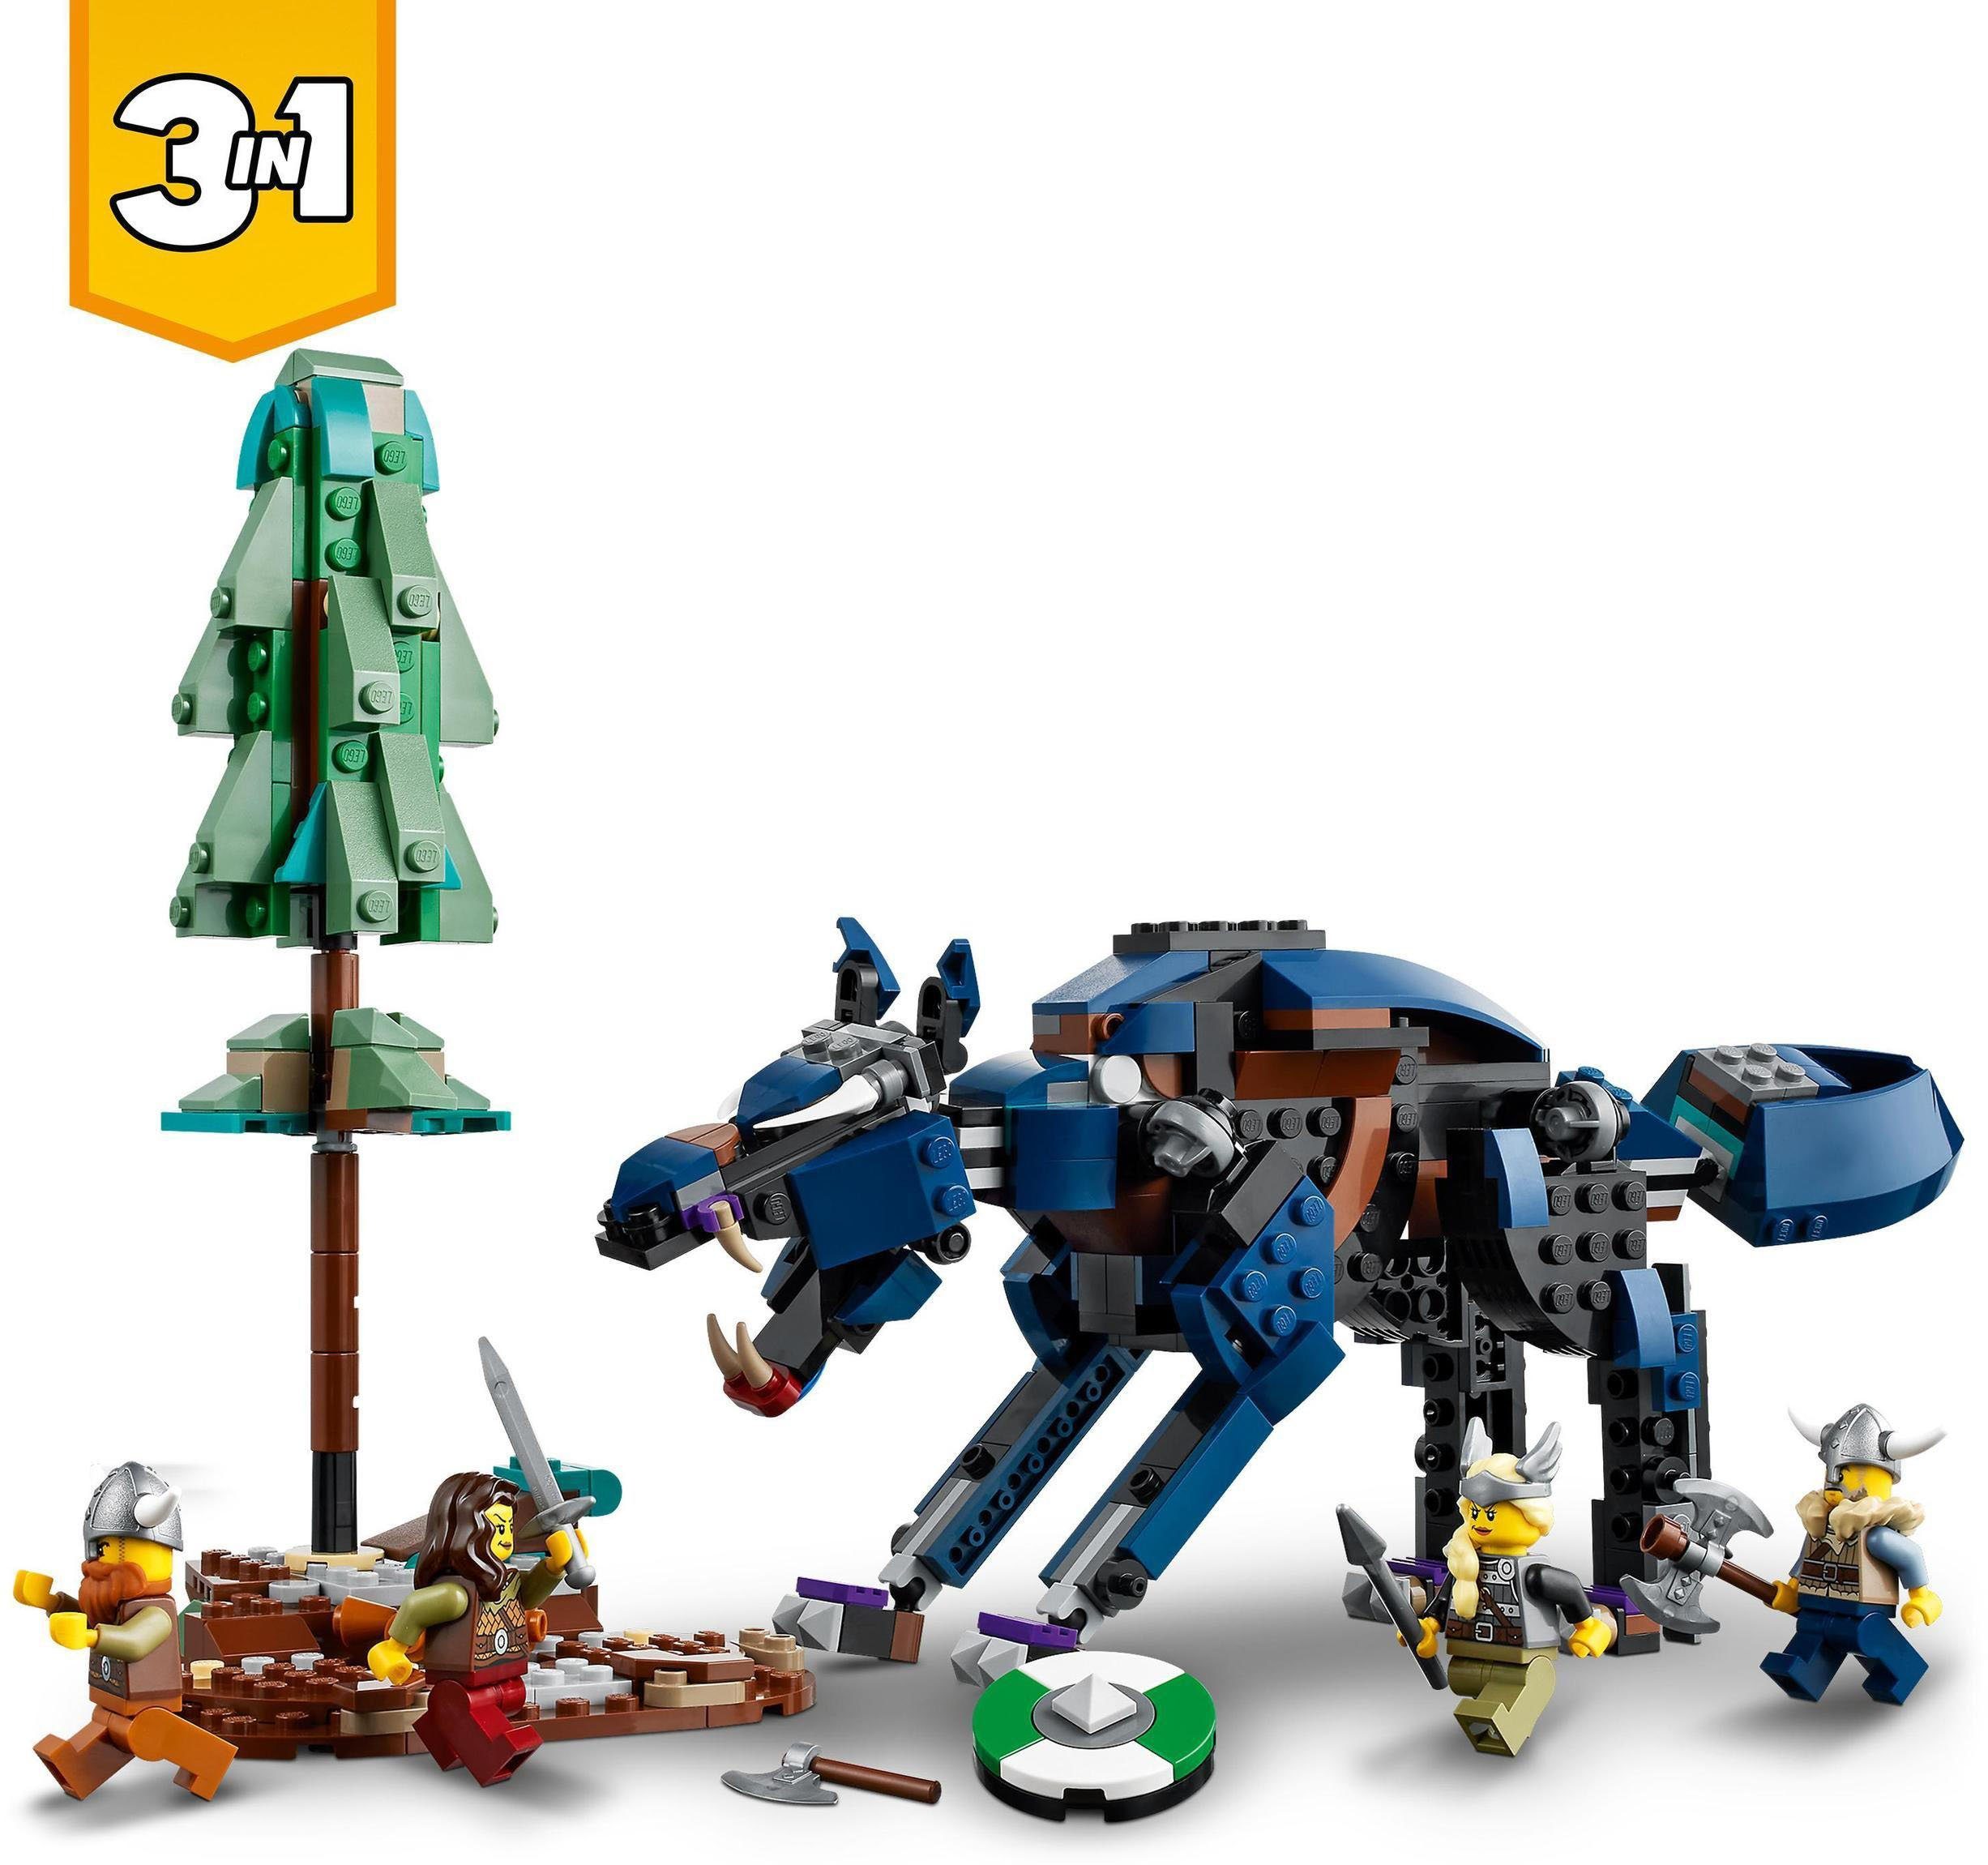 Midgardschlange Made (31132), LEGO® Konstruktionsspielsteine in Europe Wikingerschiff St), (1192 mit Creator LEGO® 3in1,